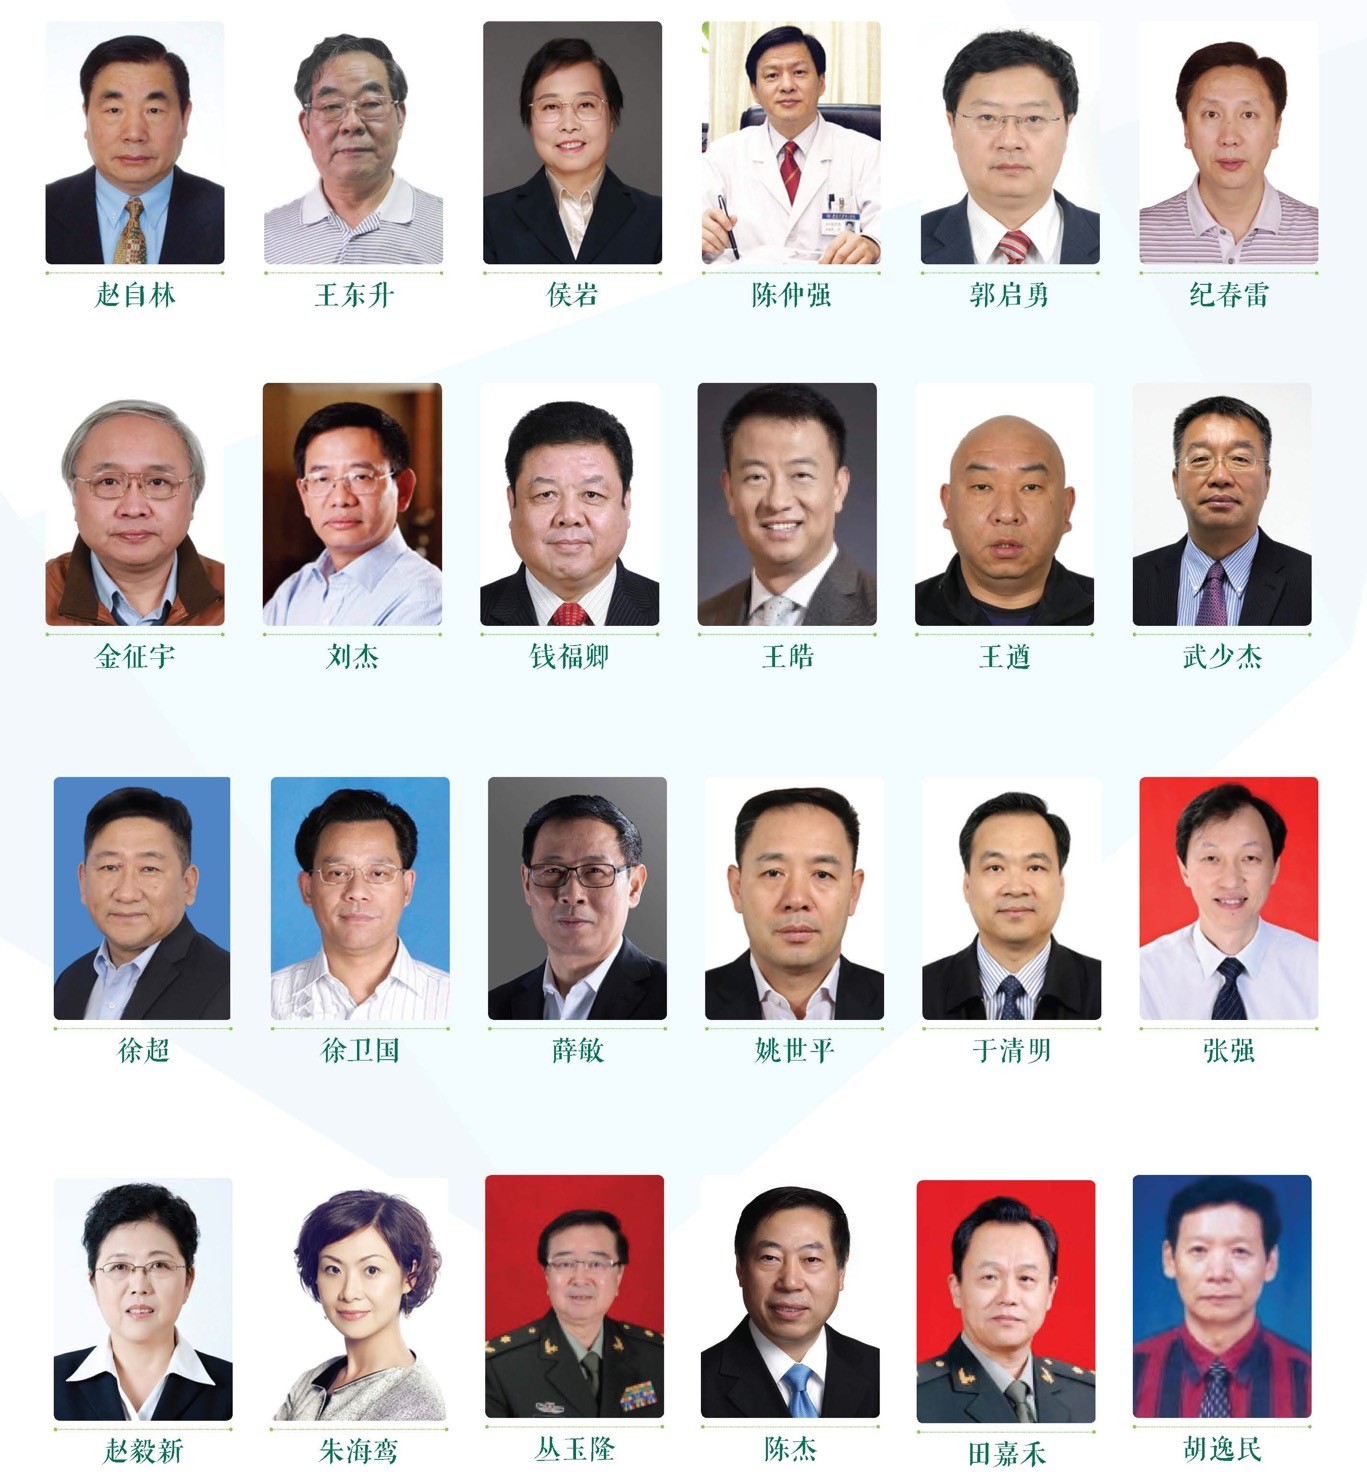 2021中国医学装备大会_门票优惠_活动家官网报名